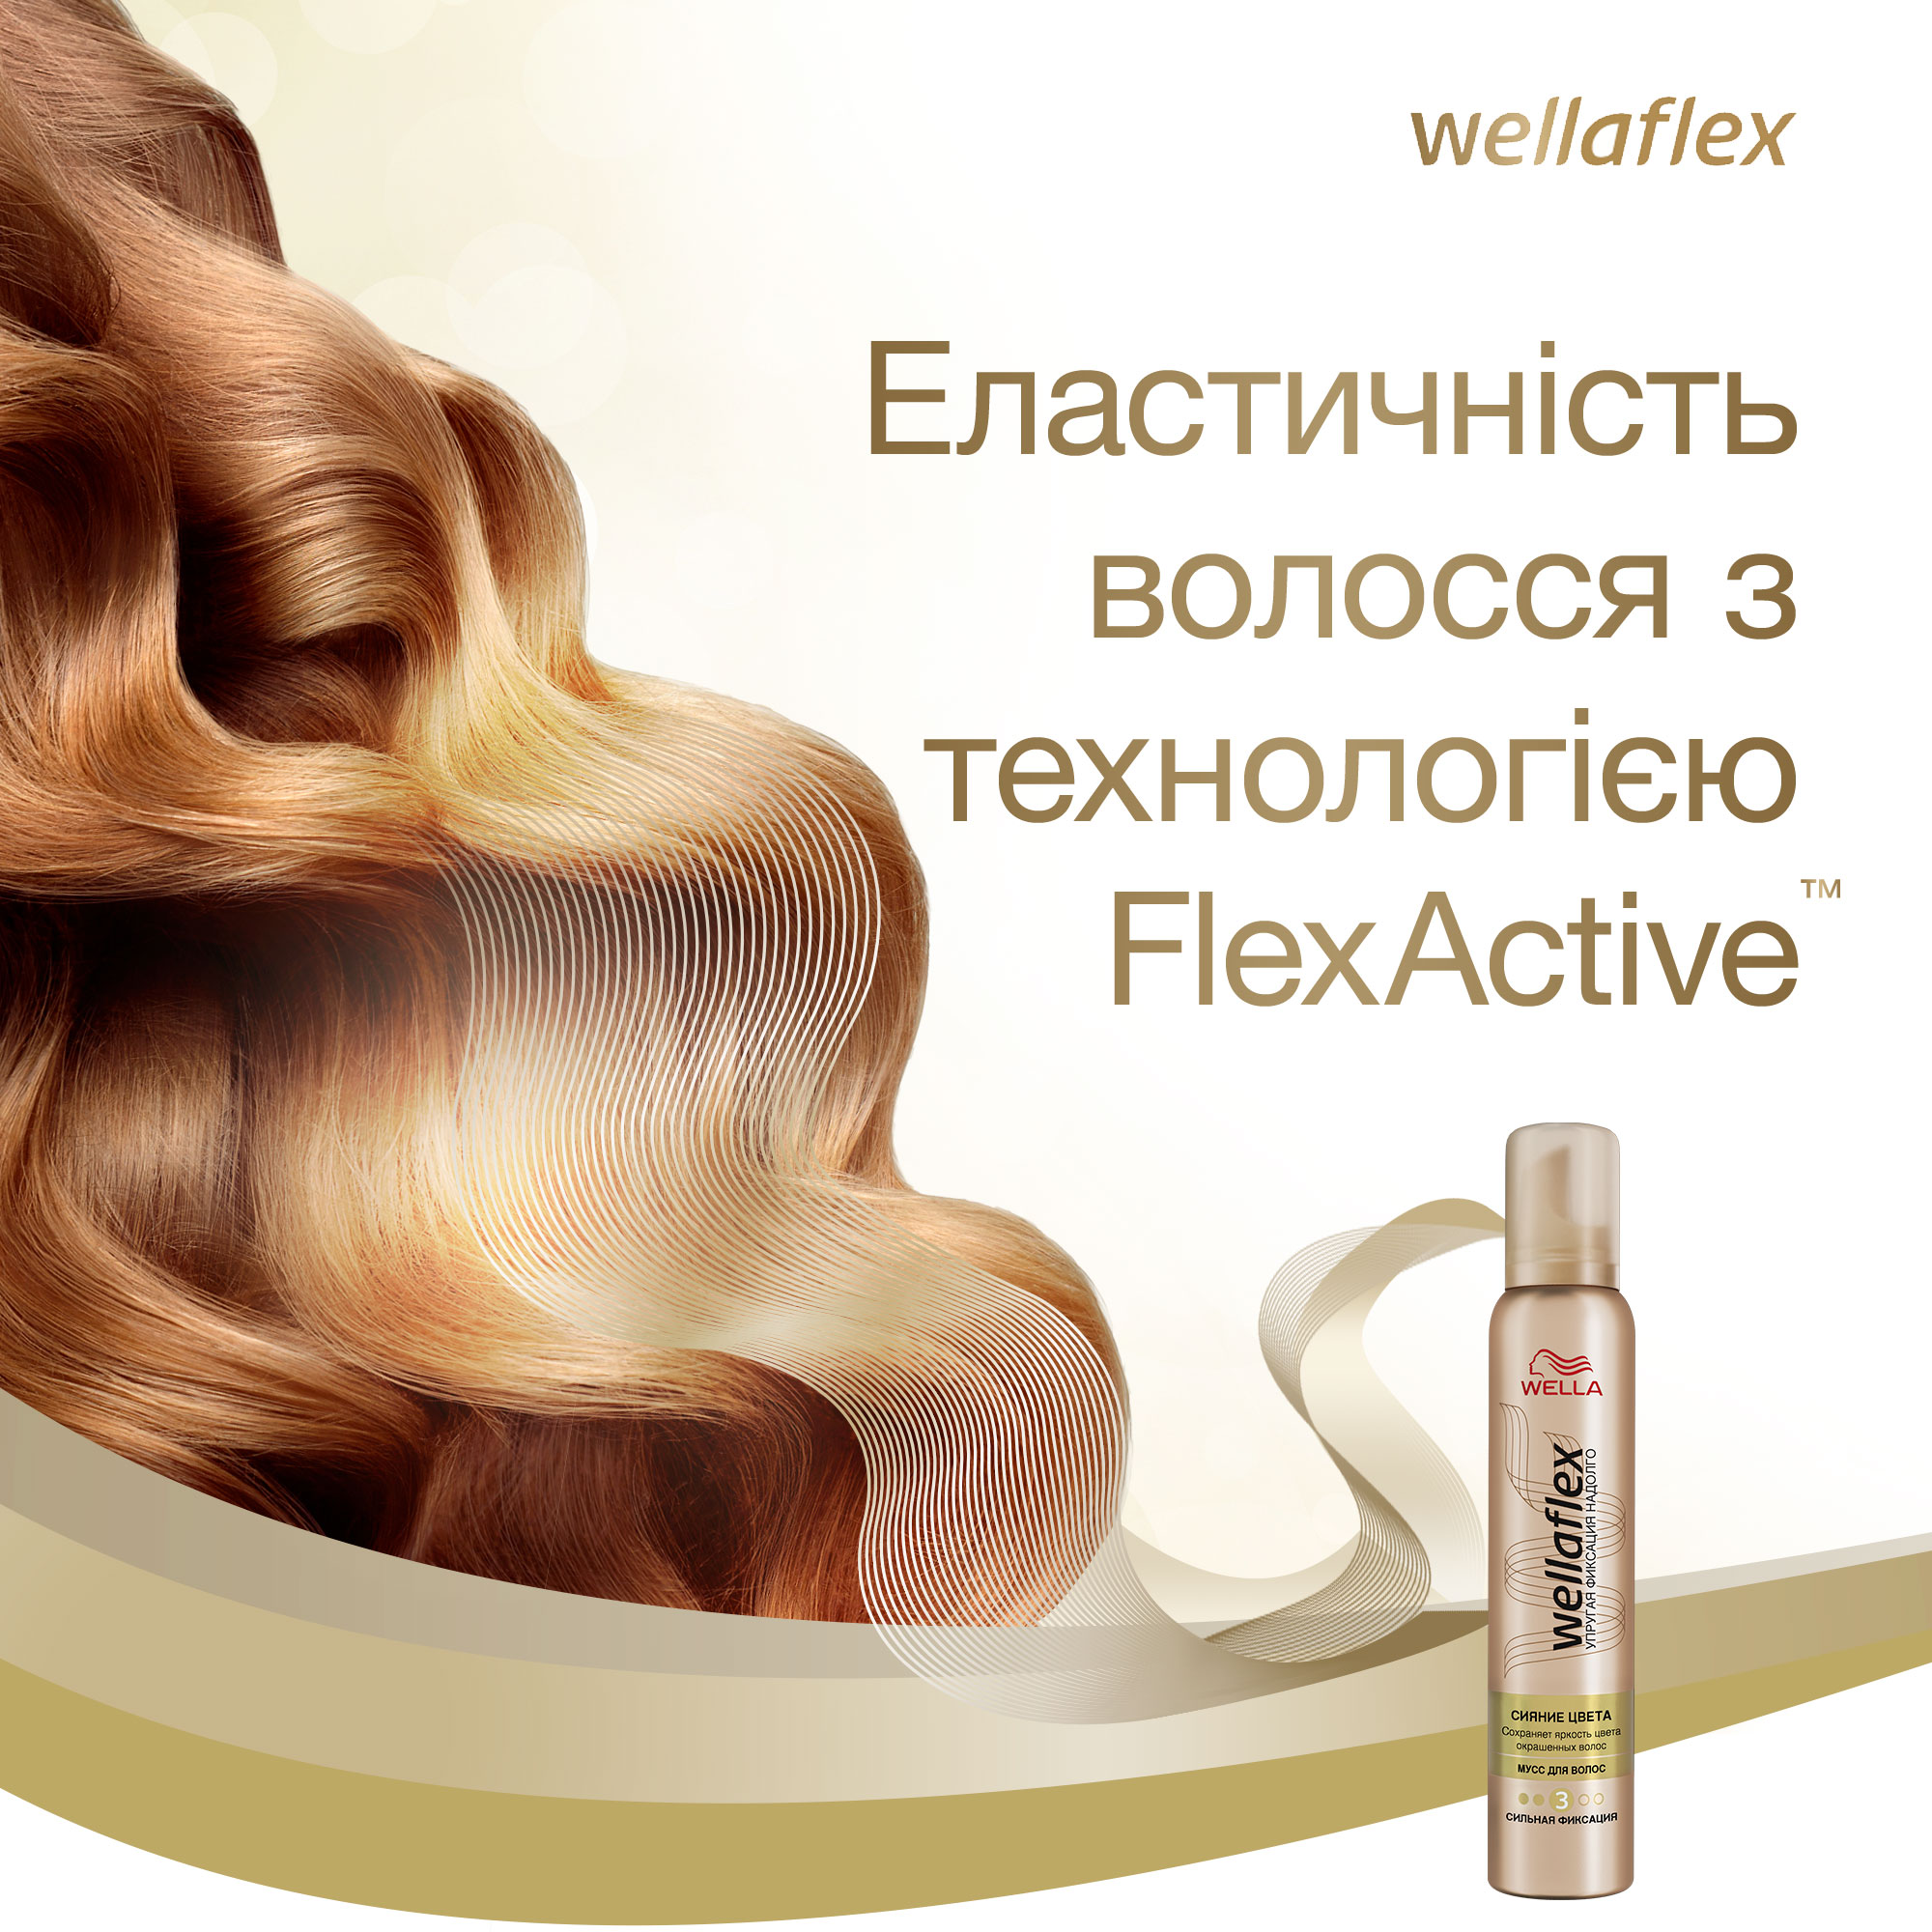 Мусс для волос Wellaflex Сияние Цвета для Сильной фиксации 200 мл - фото 6